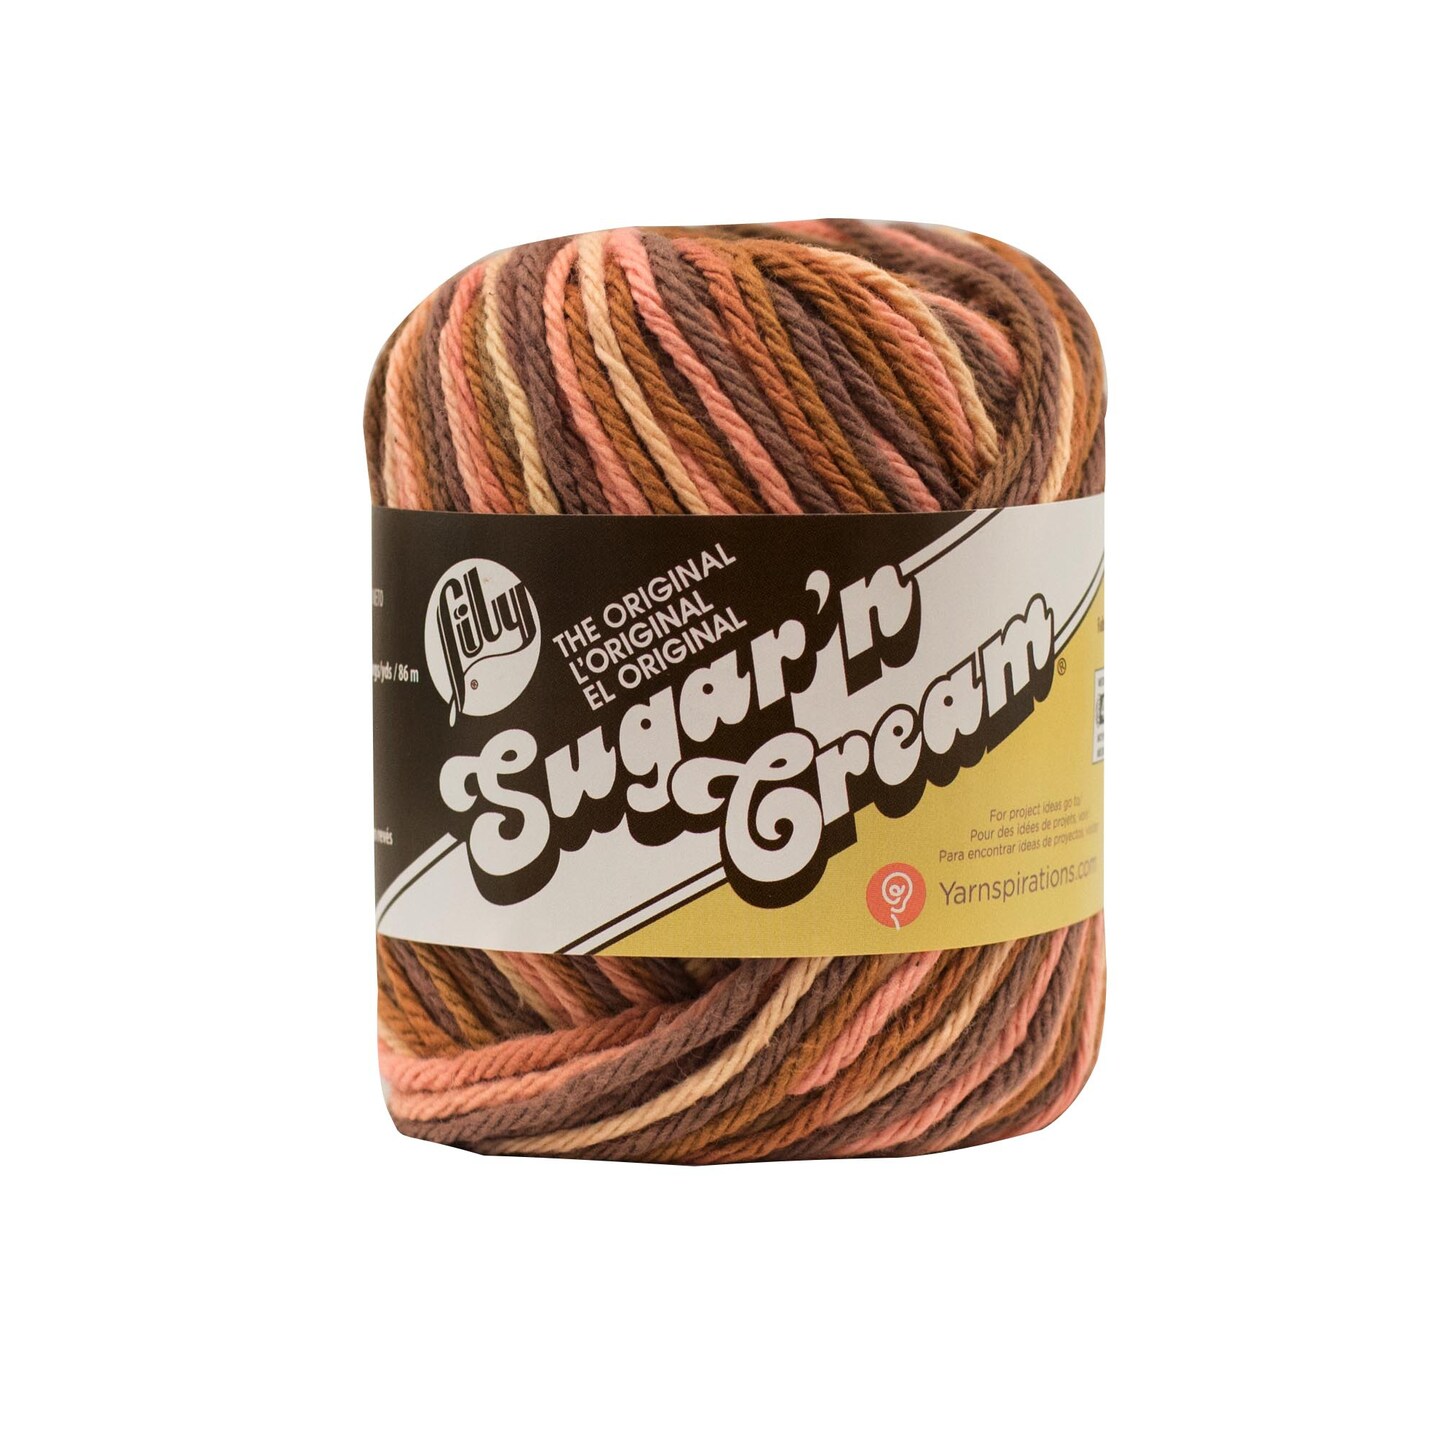 Lily Sugar 'n Cream Yarn Pack